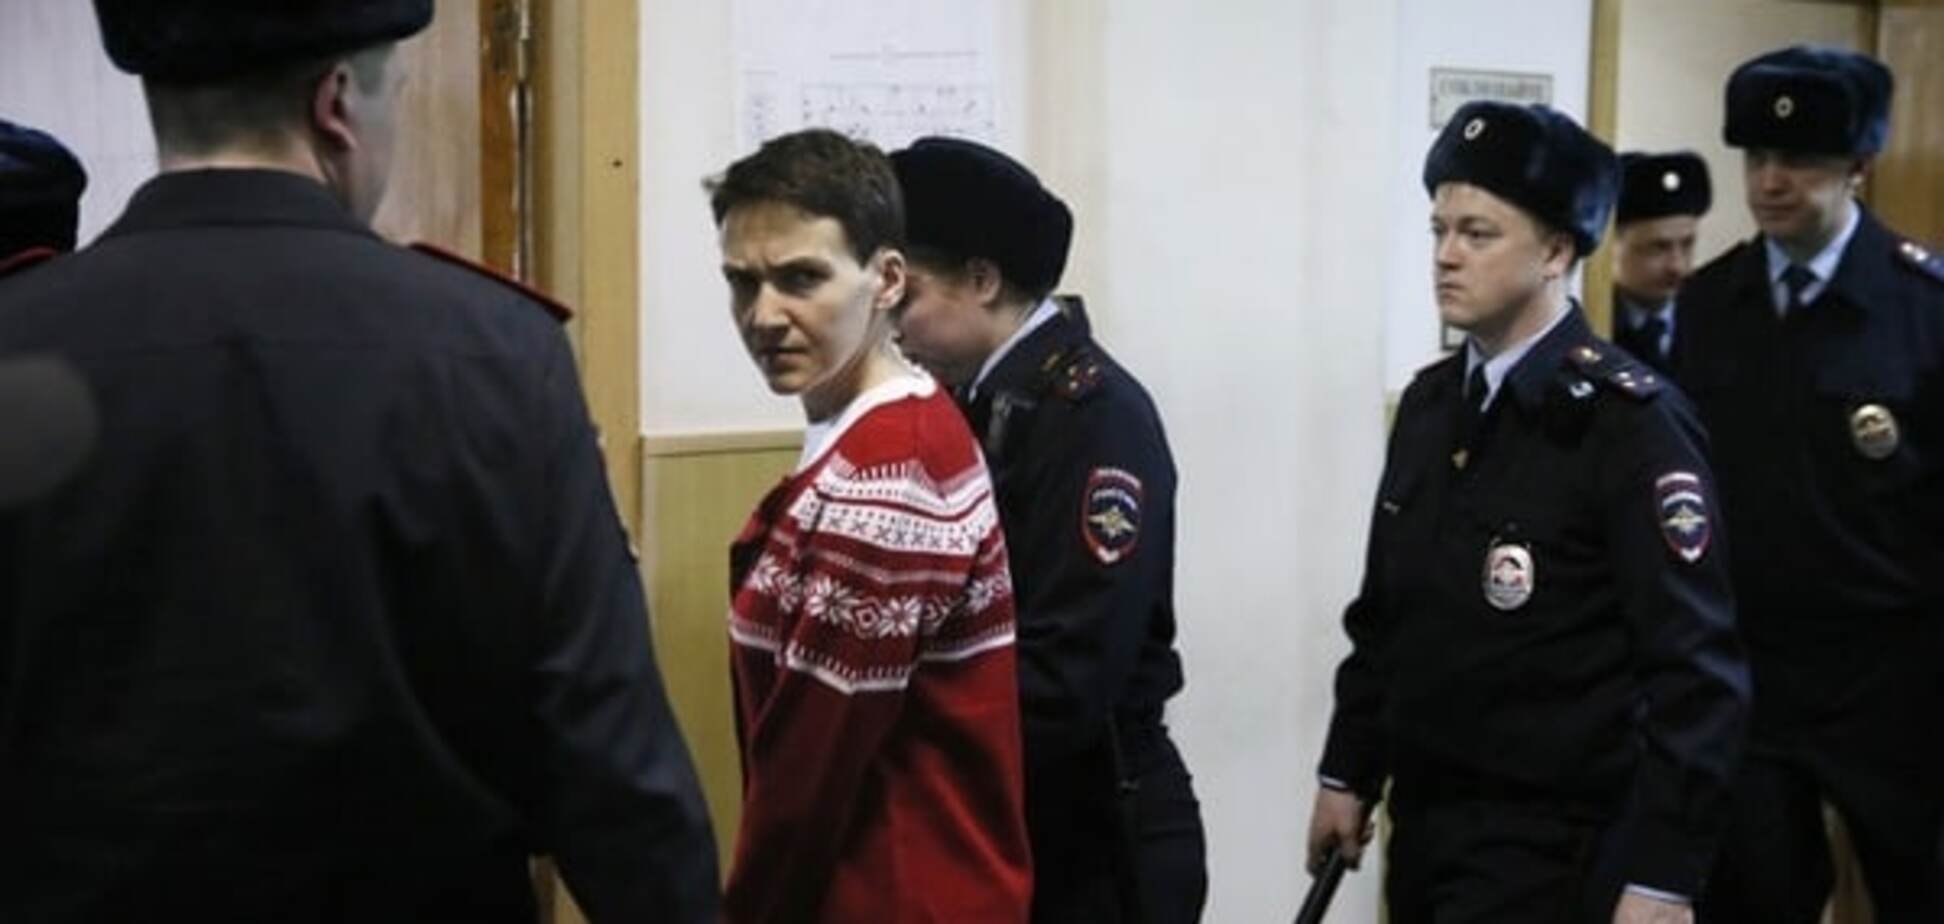 Тільки на доставку Савченко із СІЗО до суду Росія витратила 25 мільйонів - адвокат